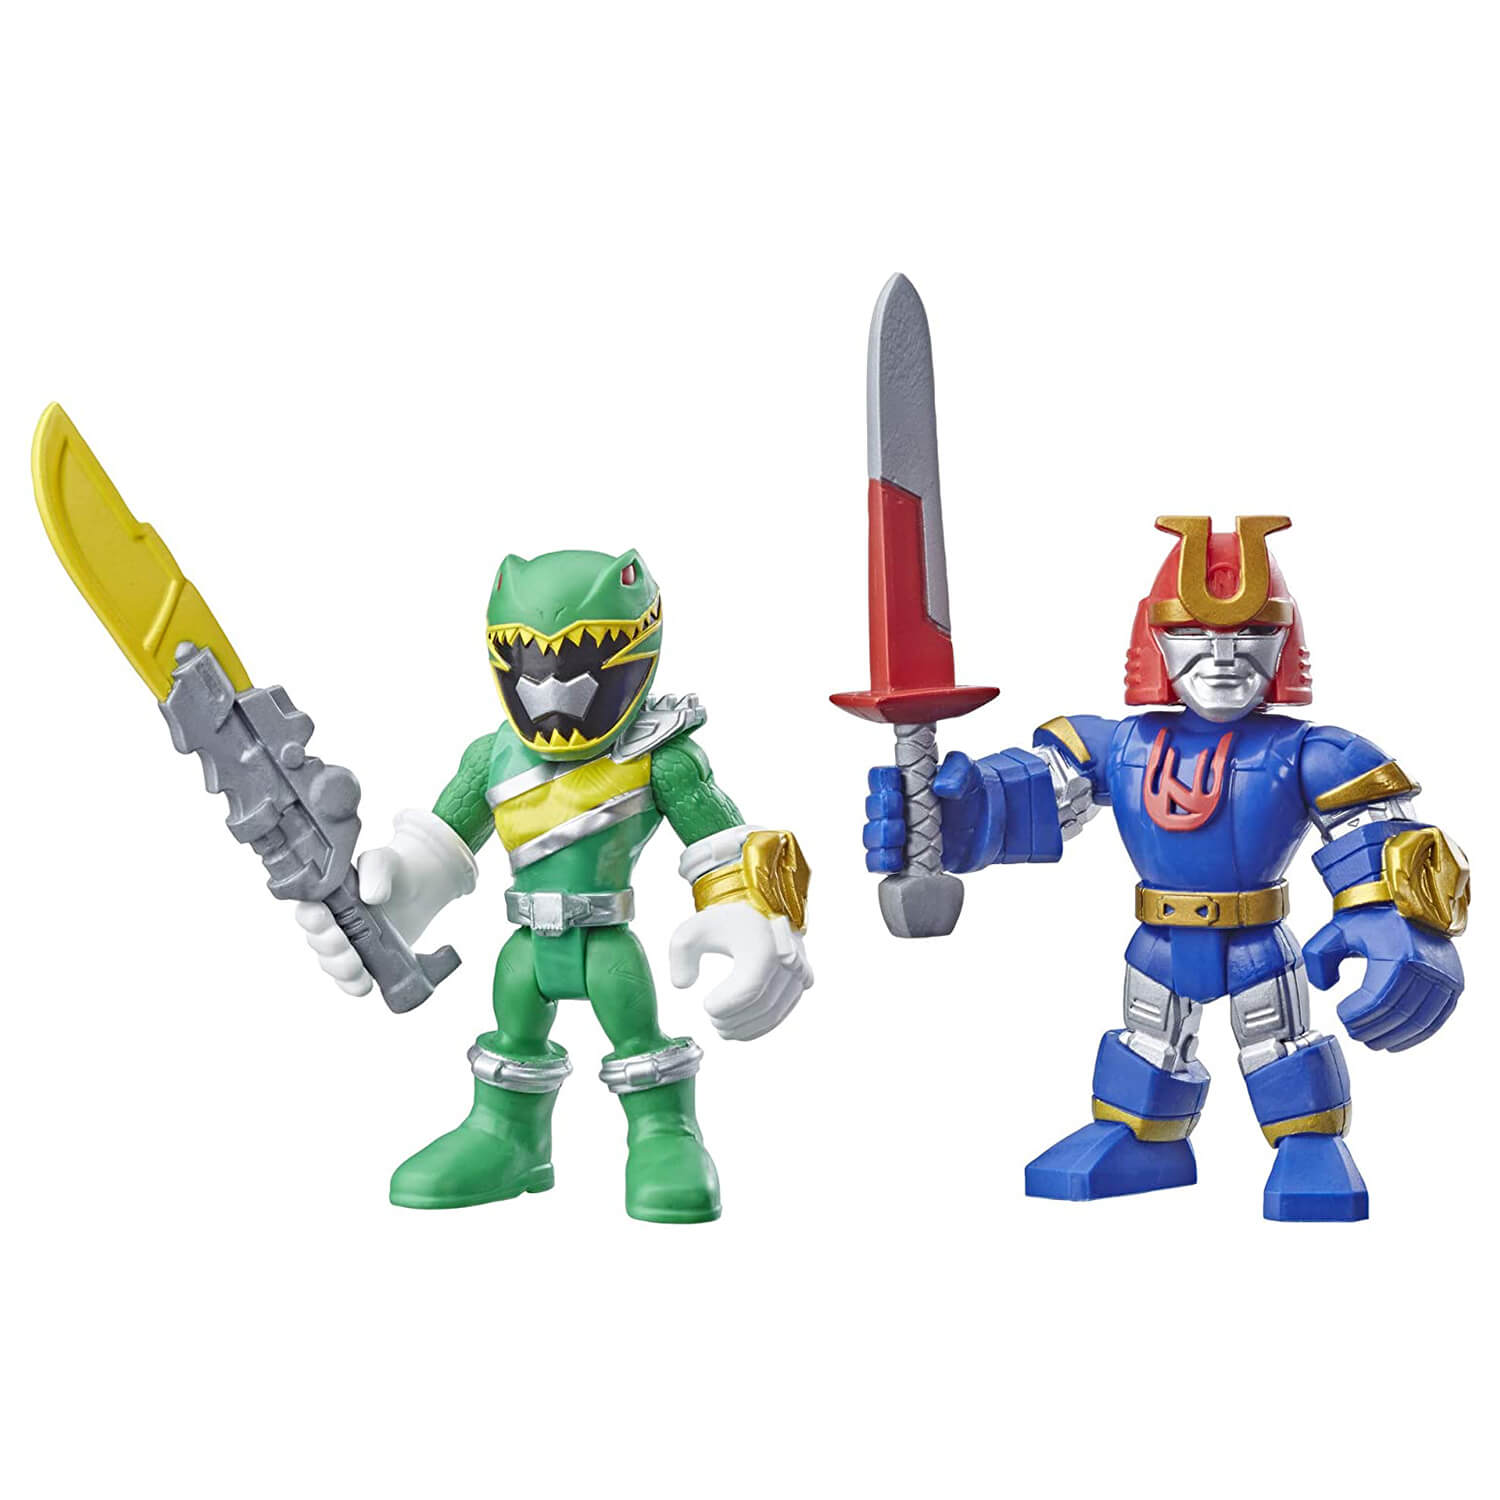 Playskool Heroes Power Rangers Green Ranger & Minjor Action Figures